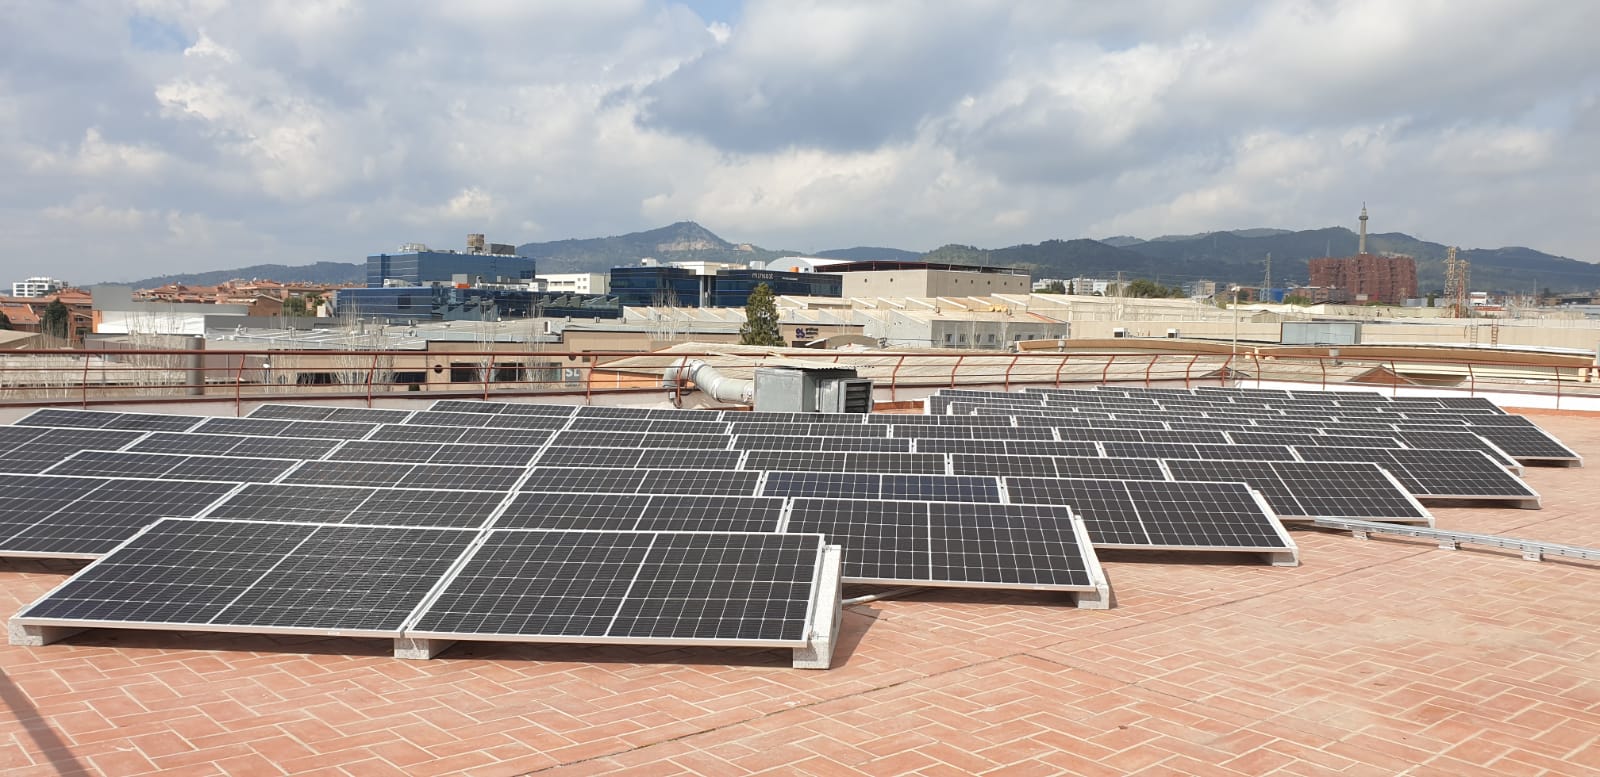 Instalacion solar fotovoltaica para autoconsumo en Sant Joan Despi2